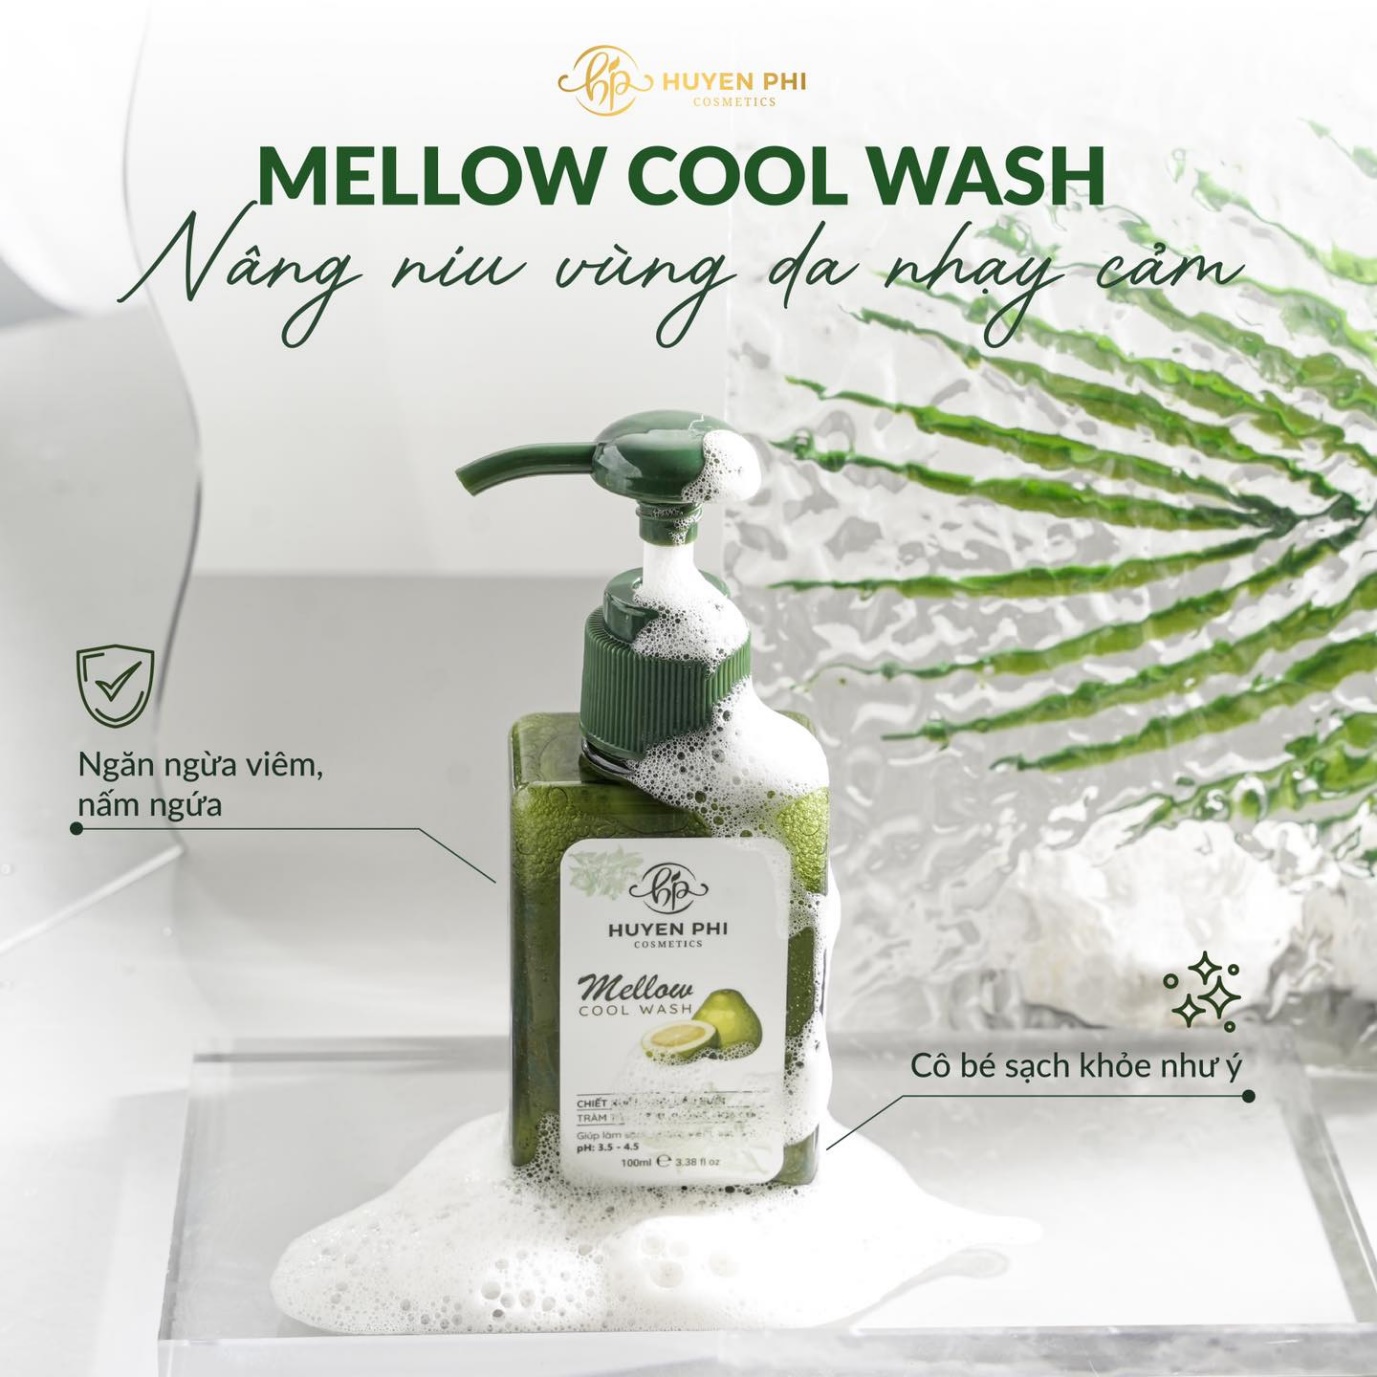 Mellow Cool Wash - Tuyệt chiêu chăm sóc “cô bé” luôn sạch khỏe, thơm mát  - 2